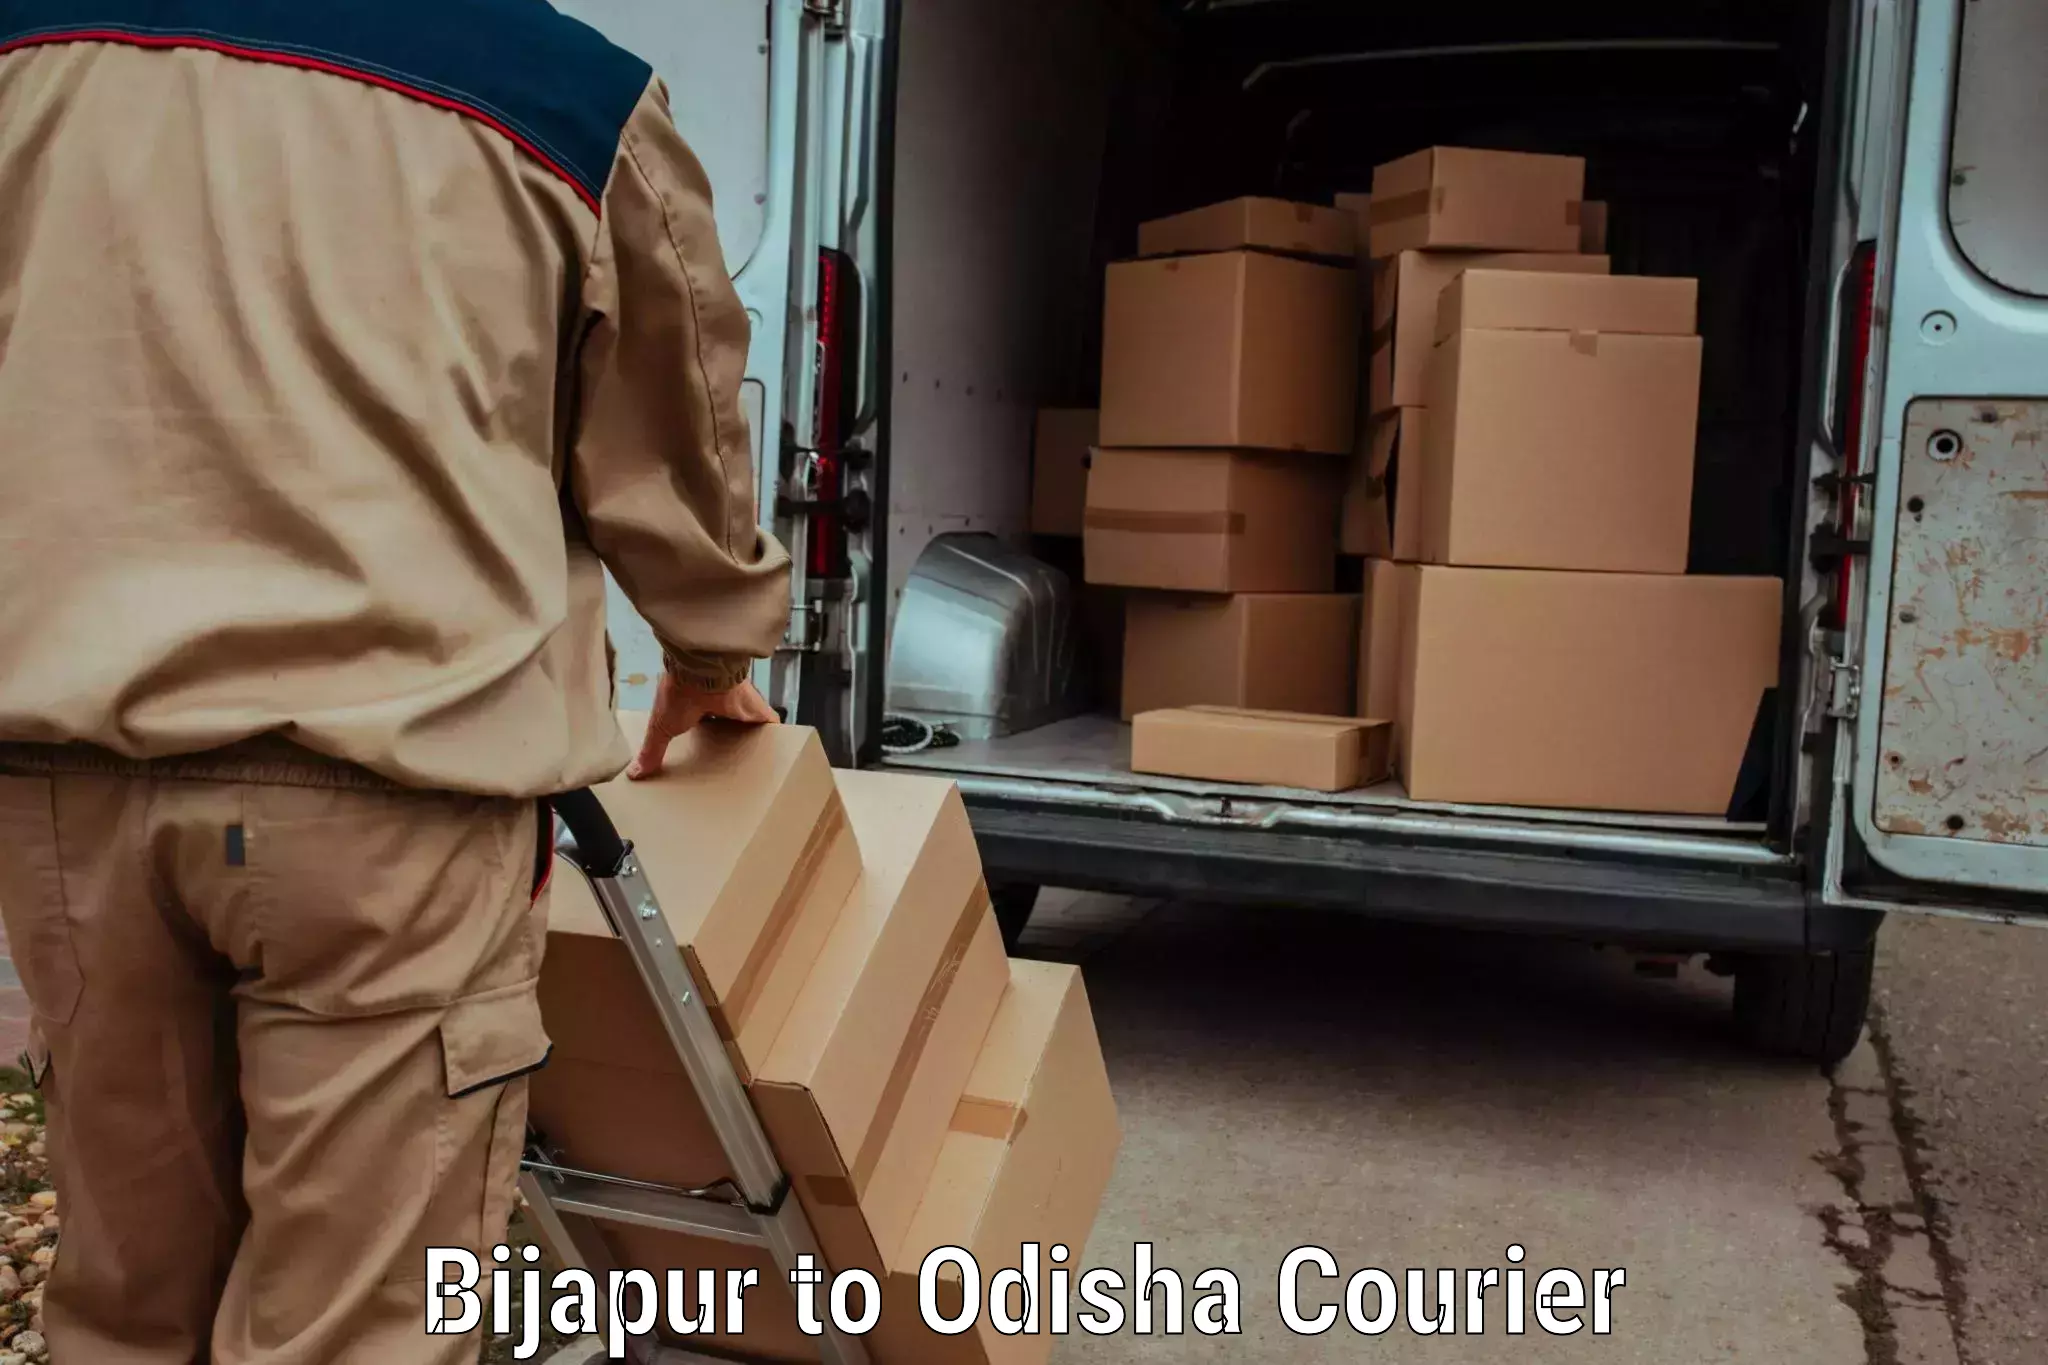 Courier service innovation Bijapur to Badagada